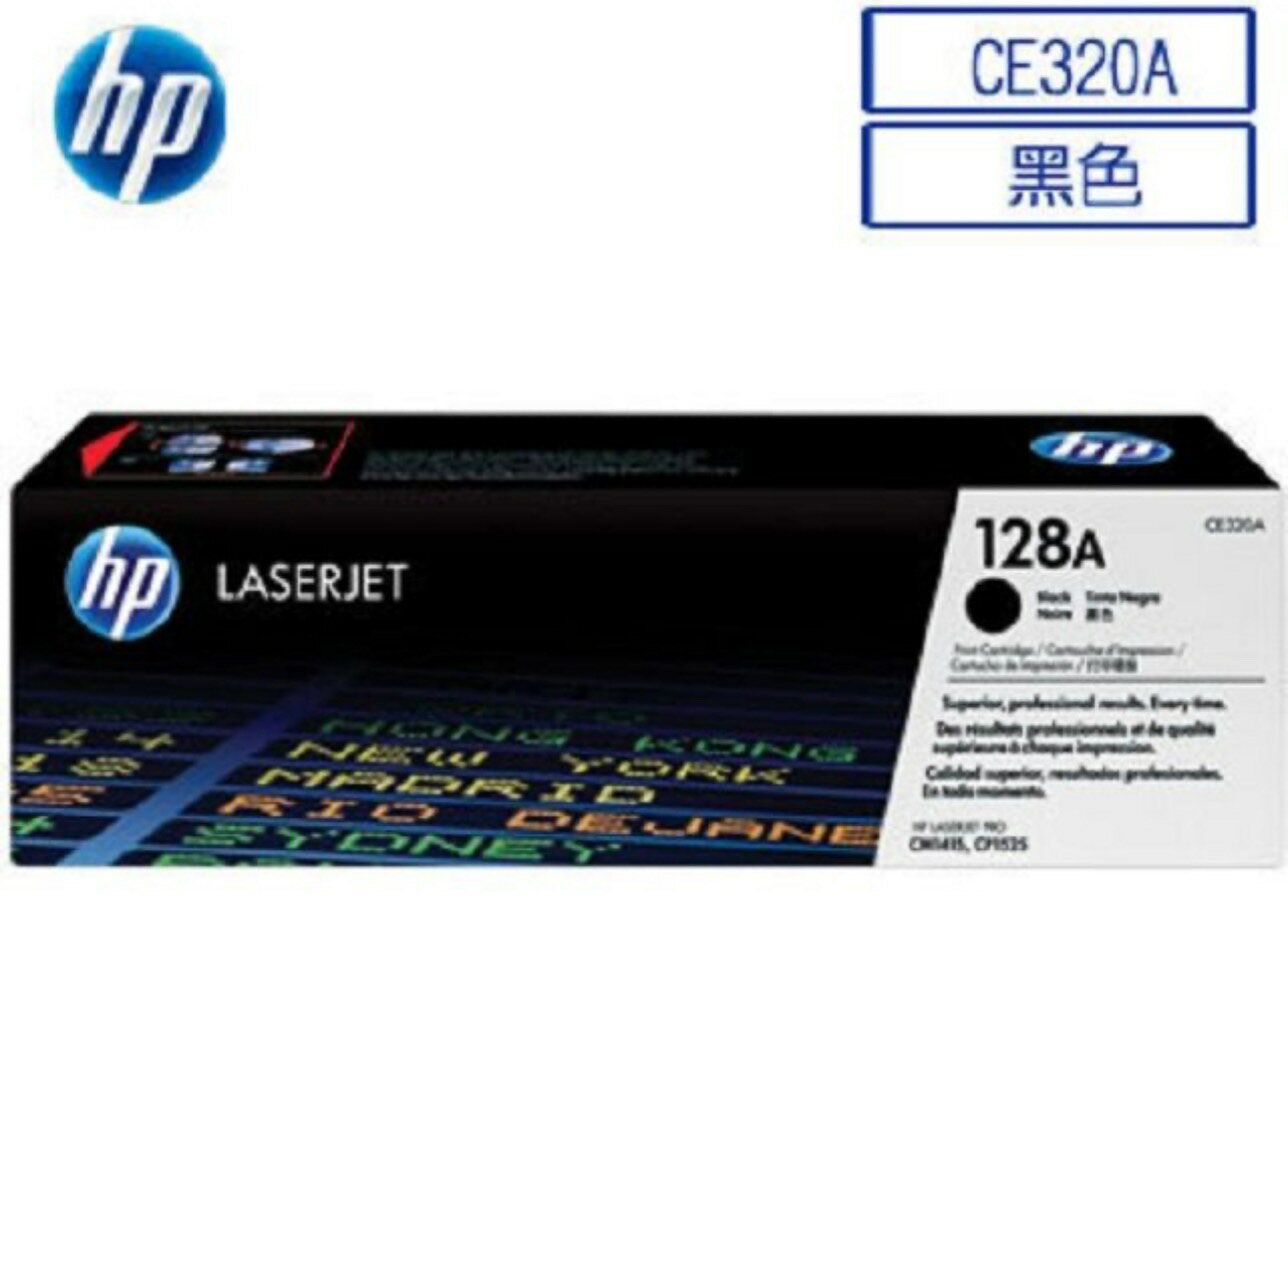 【APP跨店點數22%送】HP 128A CE320A 原廠黑色碳粉匣 ( 適用HP CLJ CP1525/CM1415 )